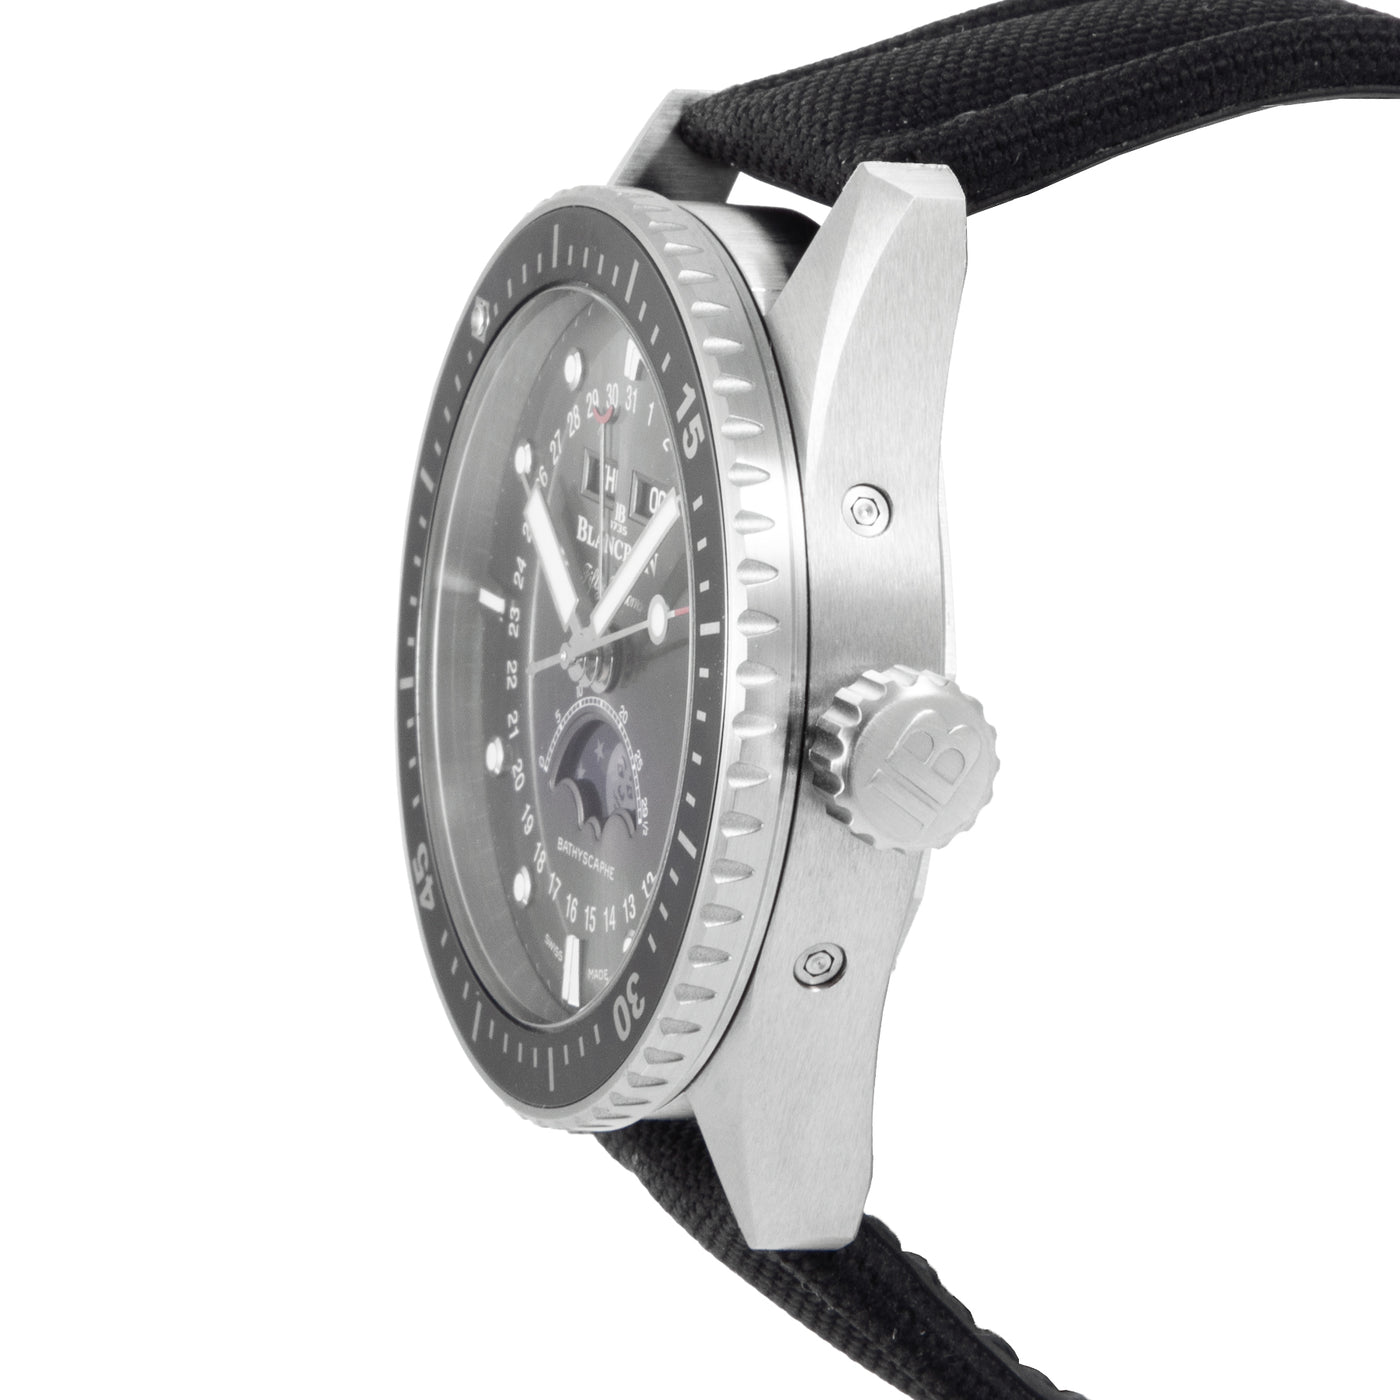 Blancpain Fifty Fathoms Bathyscaphe 50541110B52A | Timepiece360